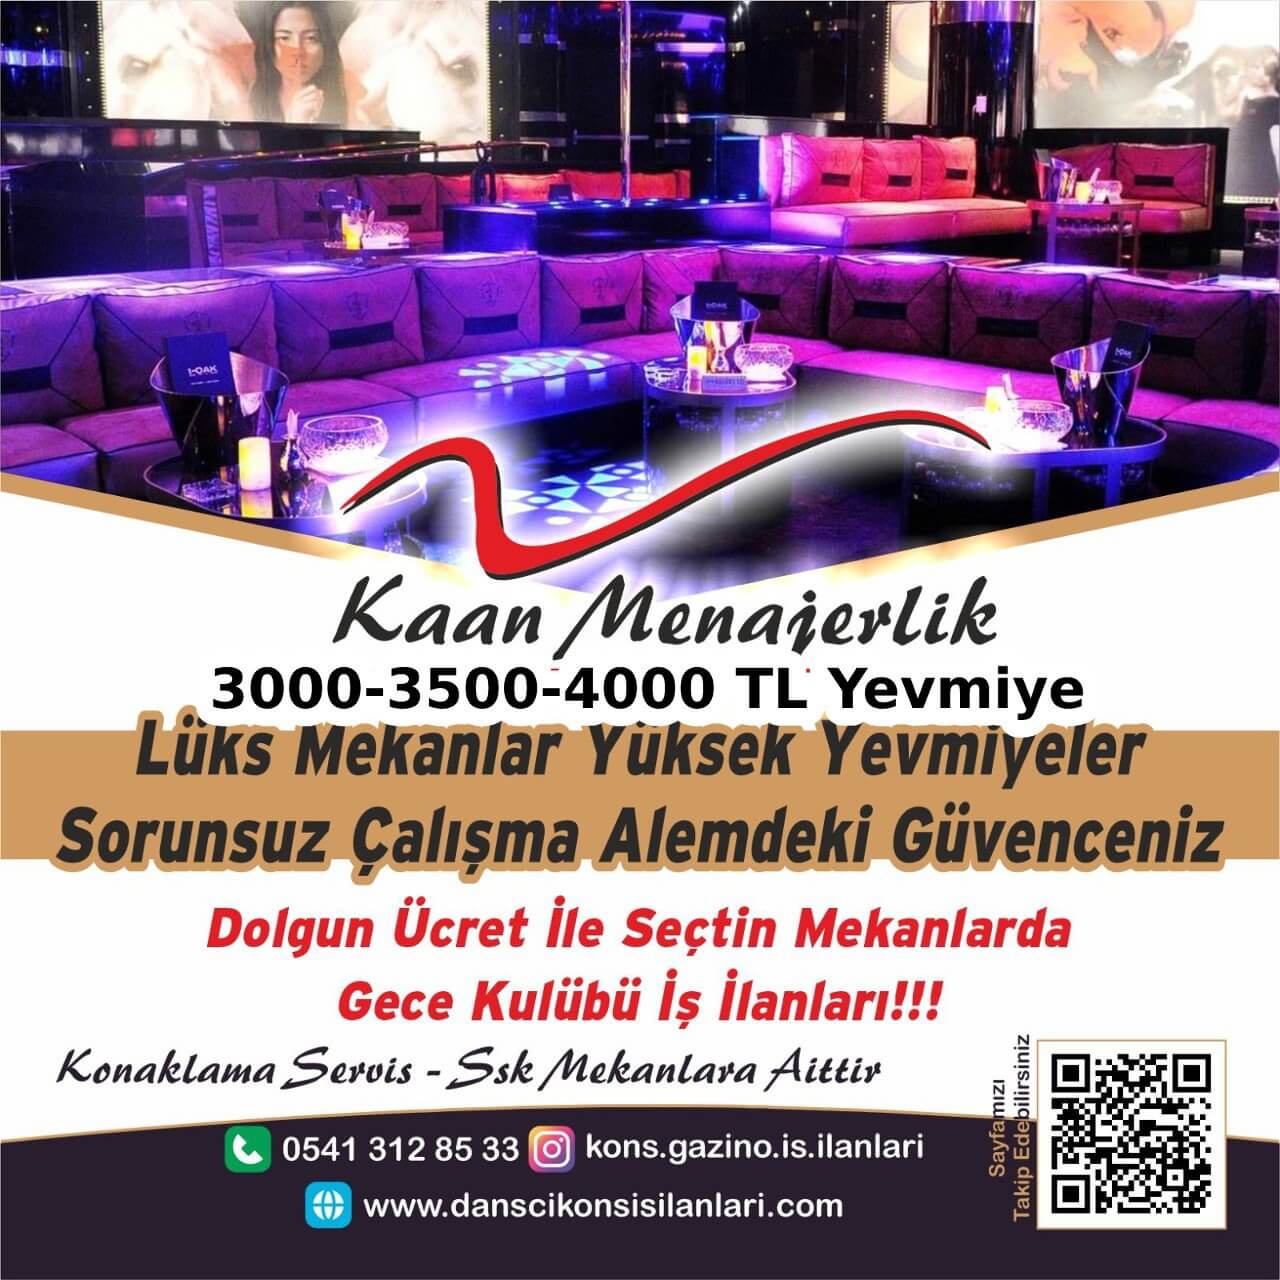 Ankara konsomatris iş ilanları